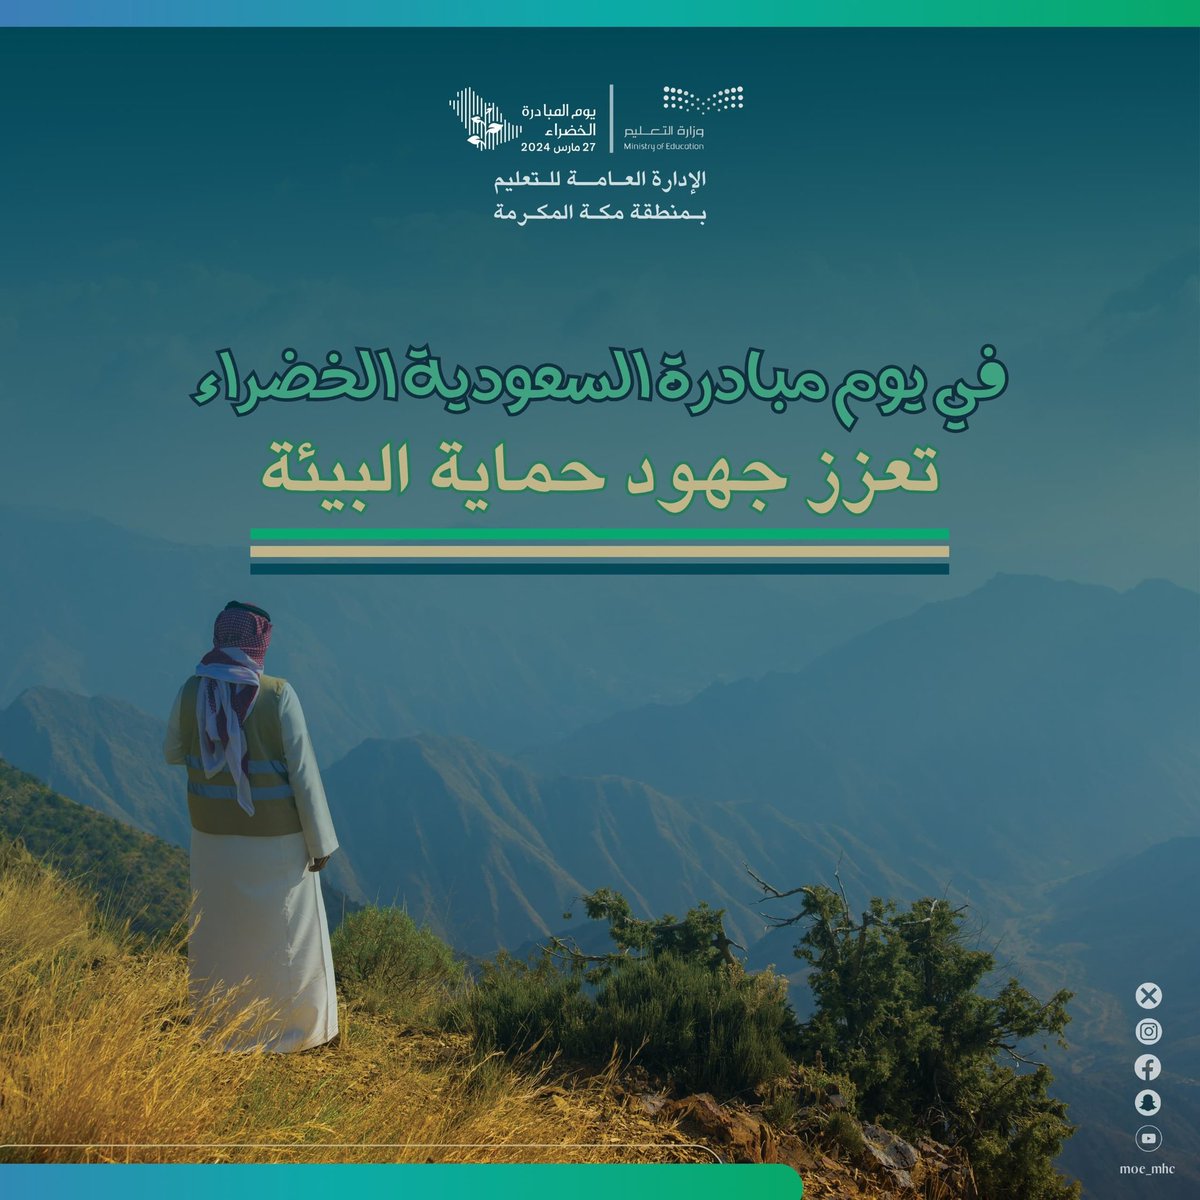 في يوم #مبادرة_السعودية_الخضراء
تعزز جهود حماية البيئة .

#تعليم_مكة 
#لمستقبل_ أكثر_استدامة
#ForAGreenerSaudi